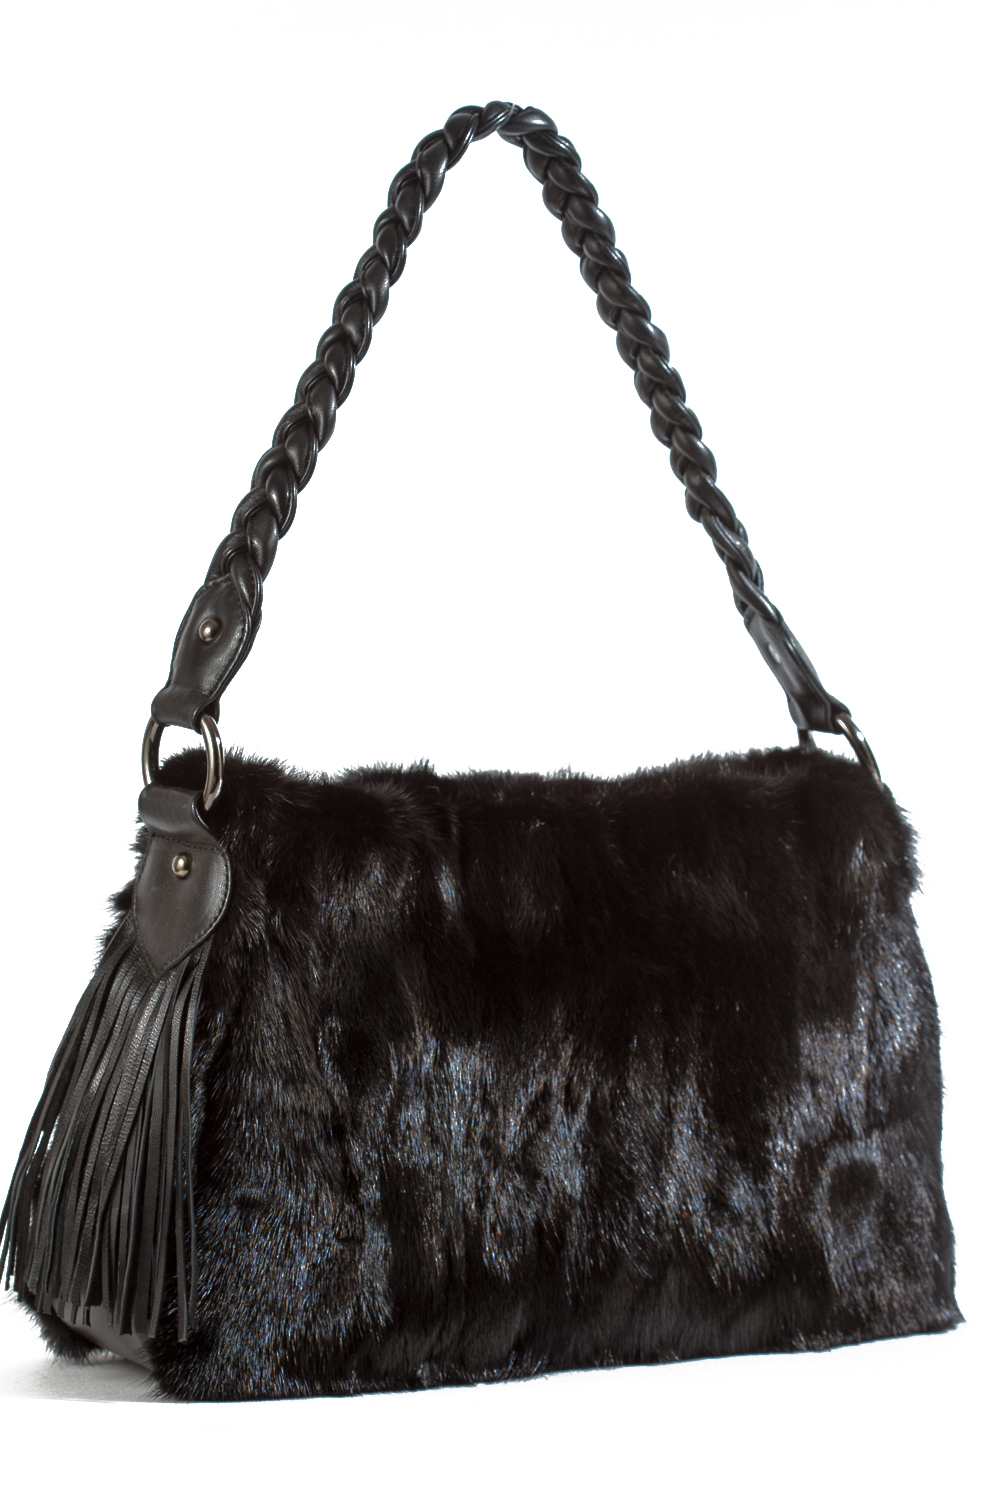 FRR CANADA Genuine Mink Fur Shoulder Bag Handbag with Horn Handle, Black